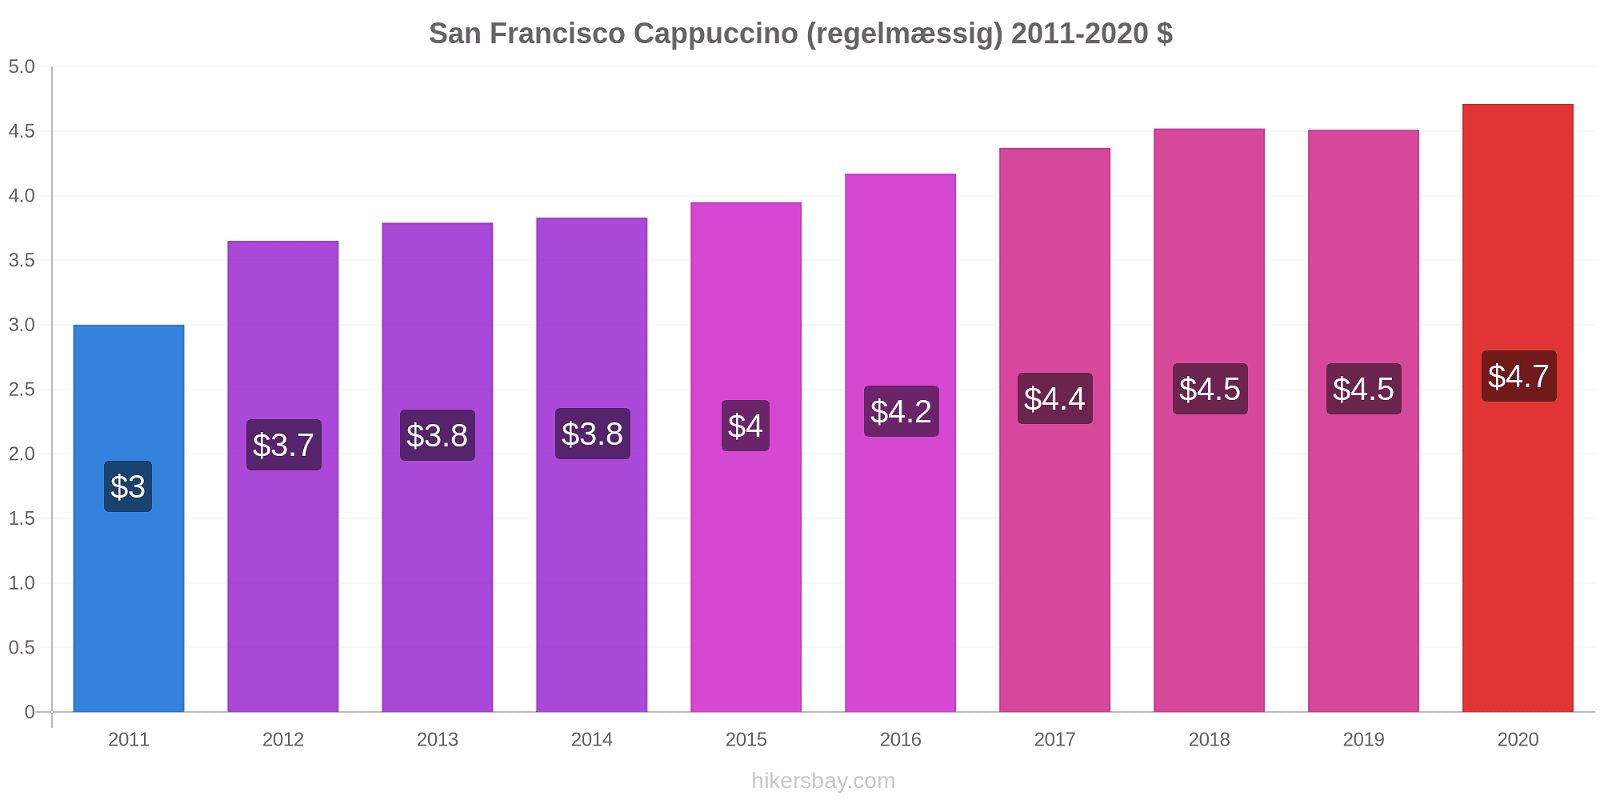 San Francisco prisændringer Cappuccino (regelmæssig) hikersbay.com